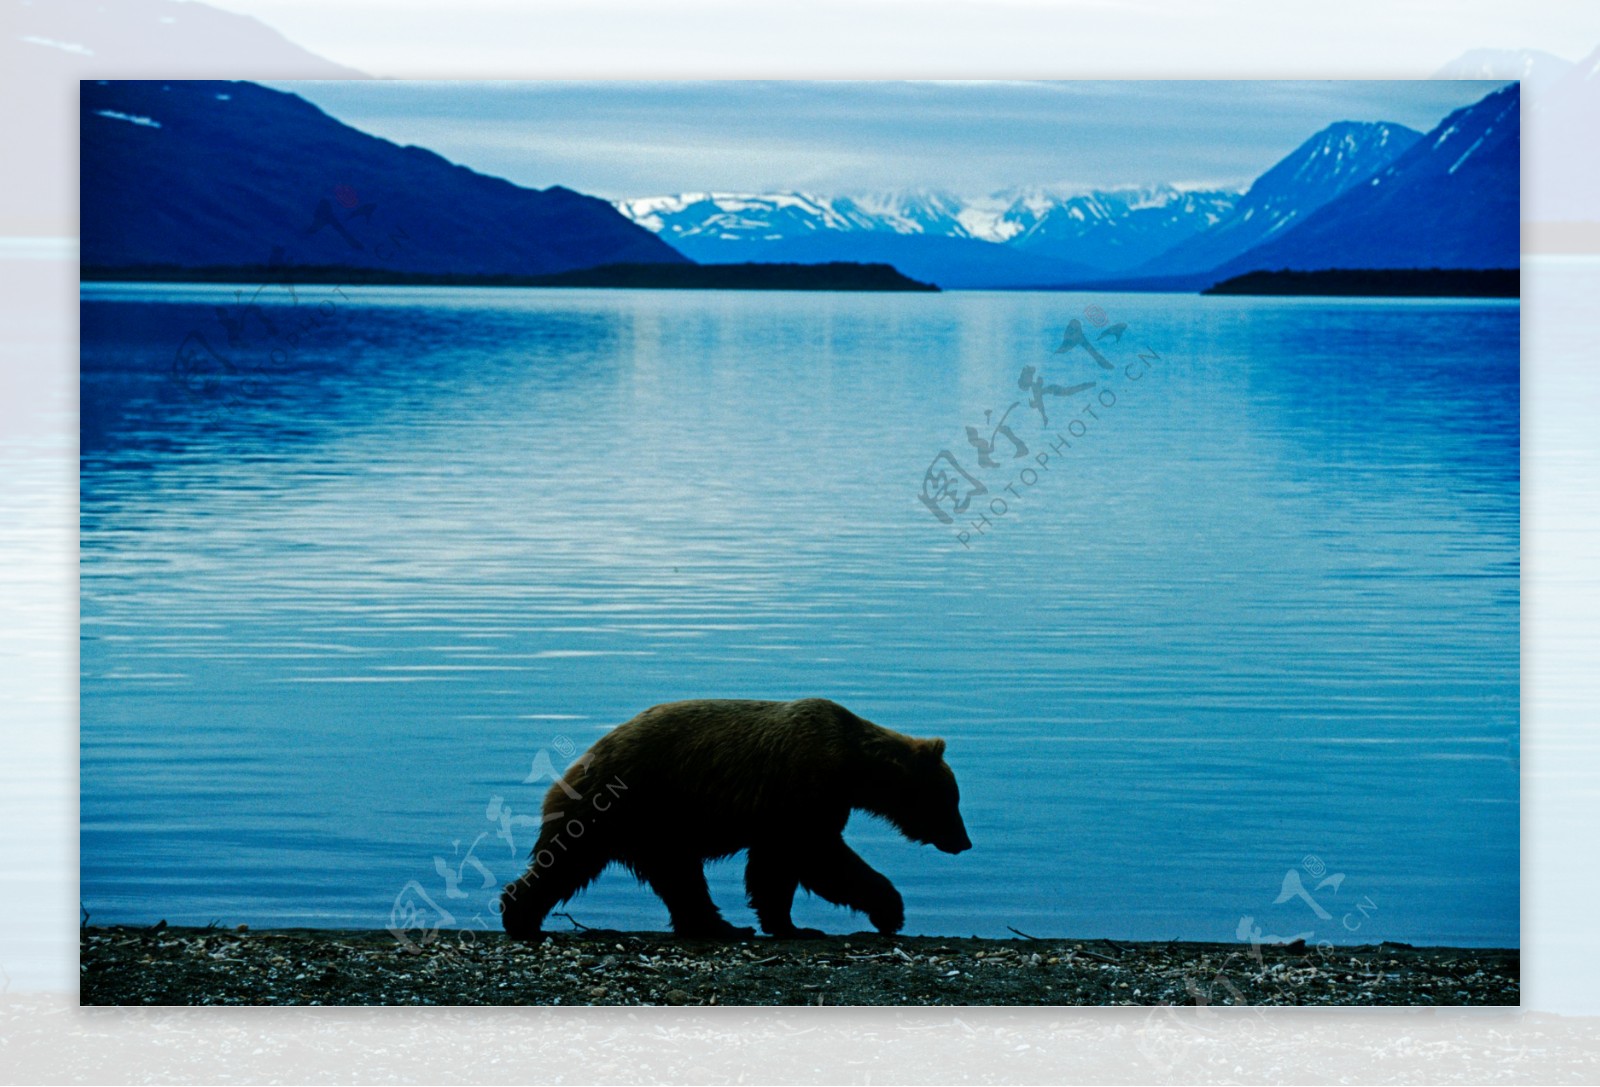 雪山湖泊美景与熊图片